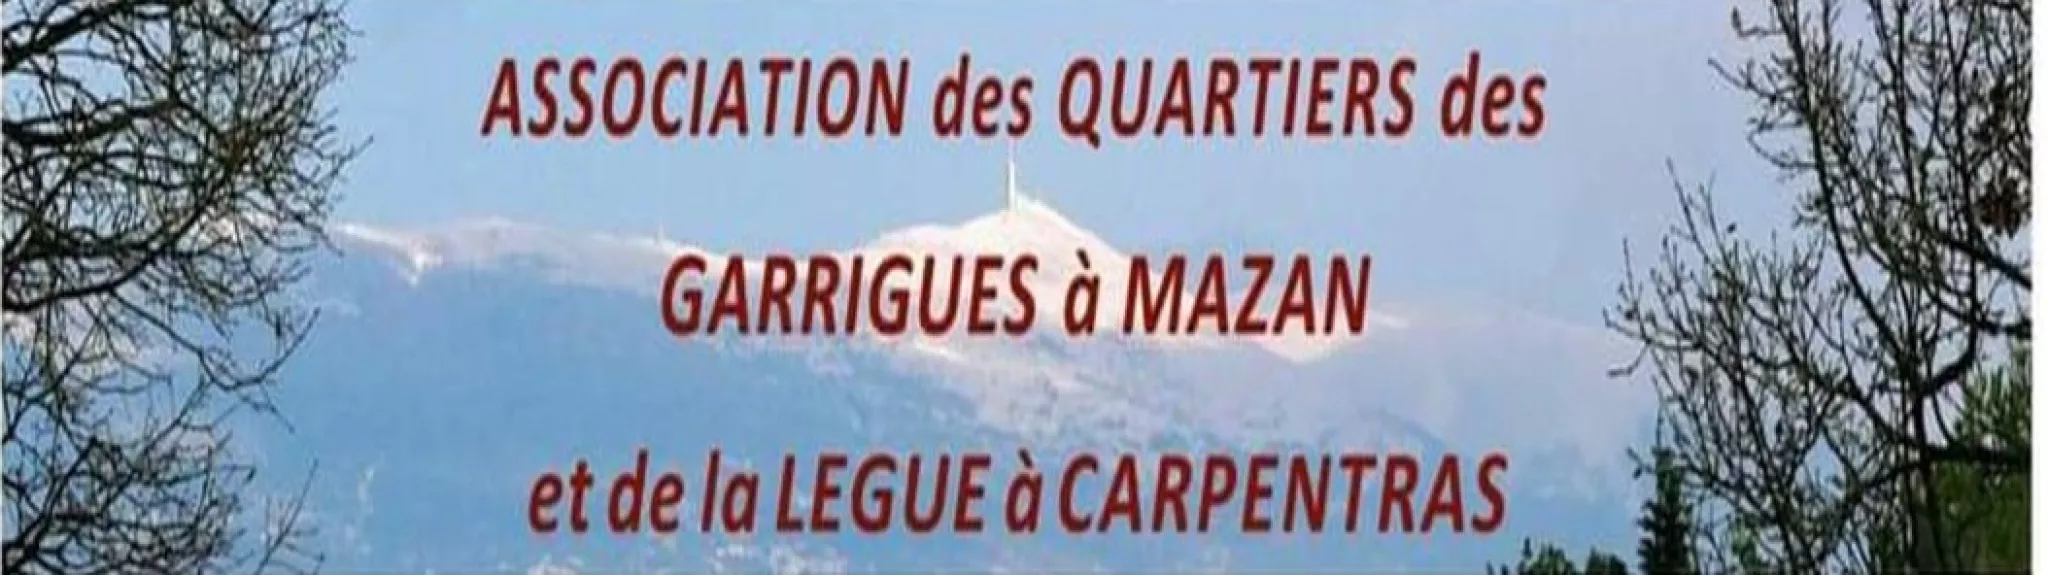 Les Garrigues de Mazan et Légue de Carpentras